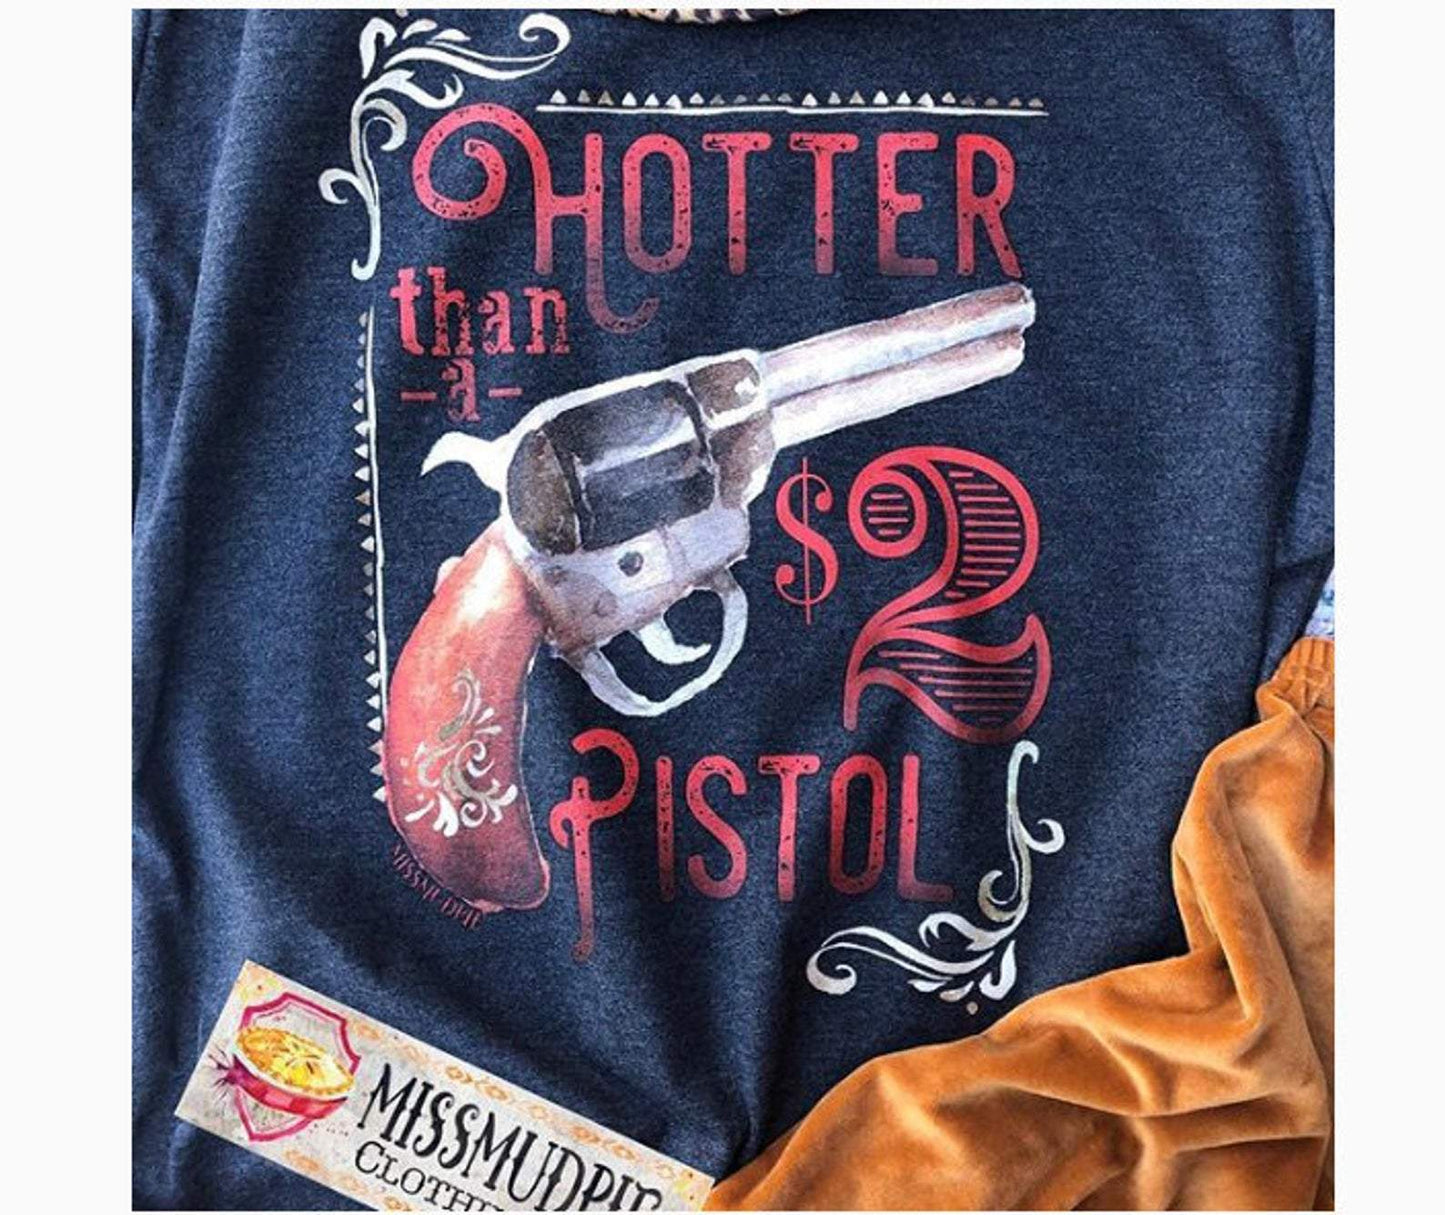 Hotter Than a $2 Pistol In Tee - hotter, pistol, shirt, shirts, t, tee, tees -  - Baha Ranch Western Wear